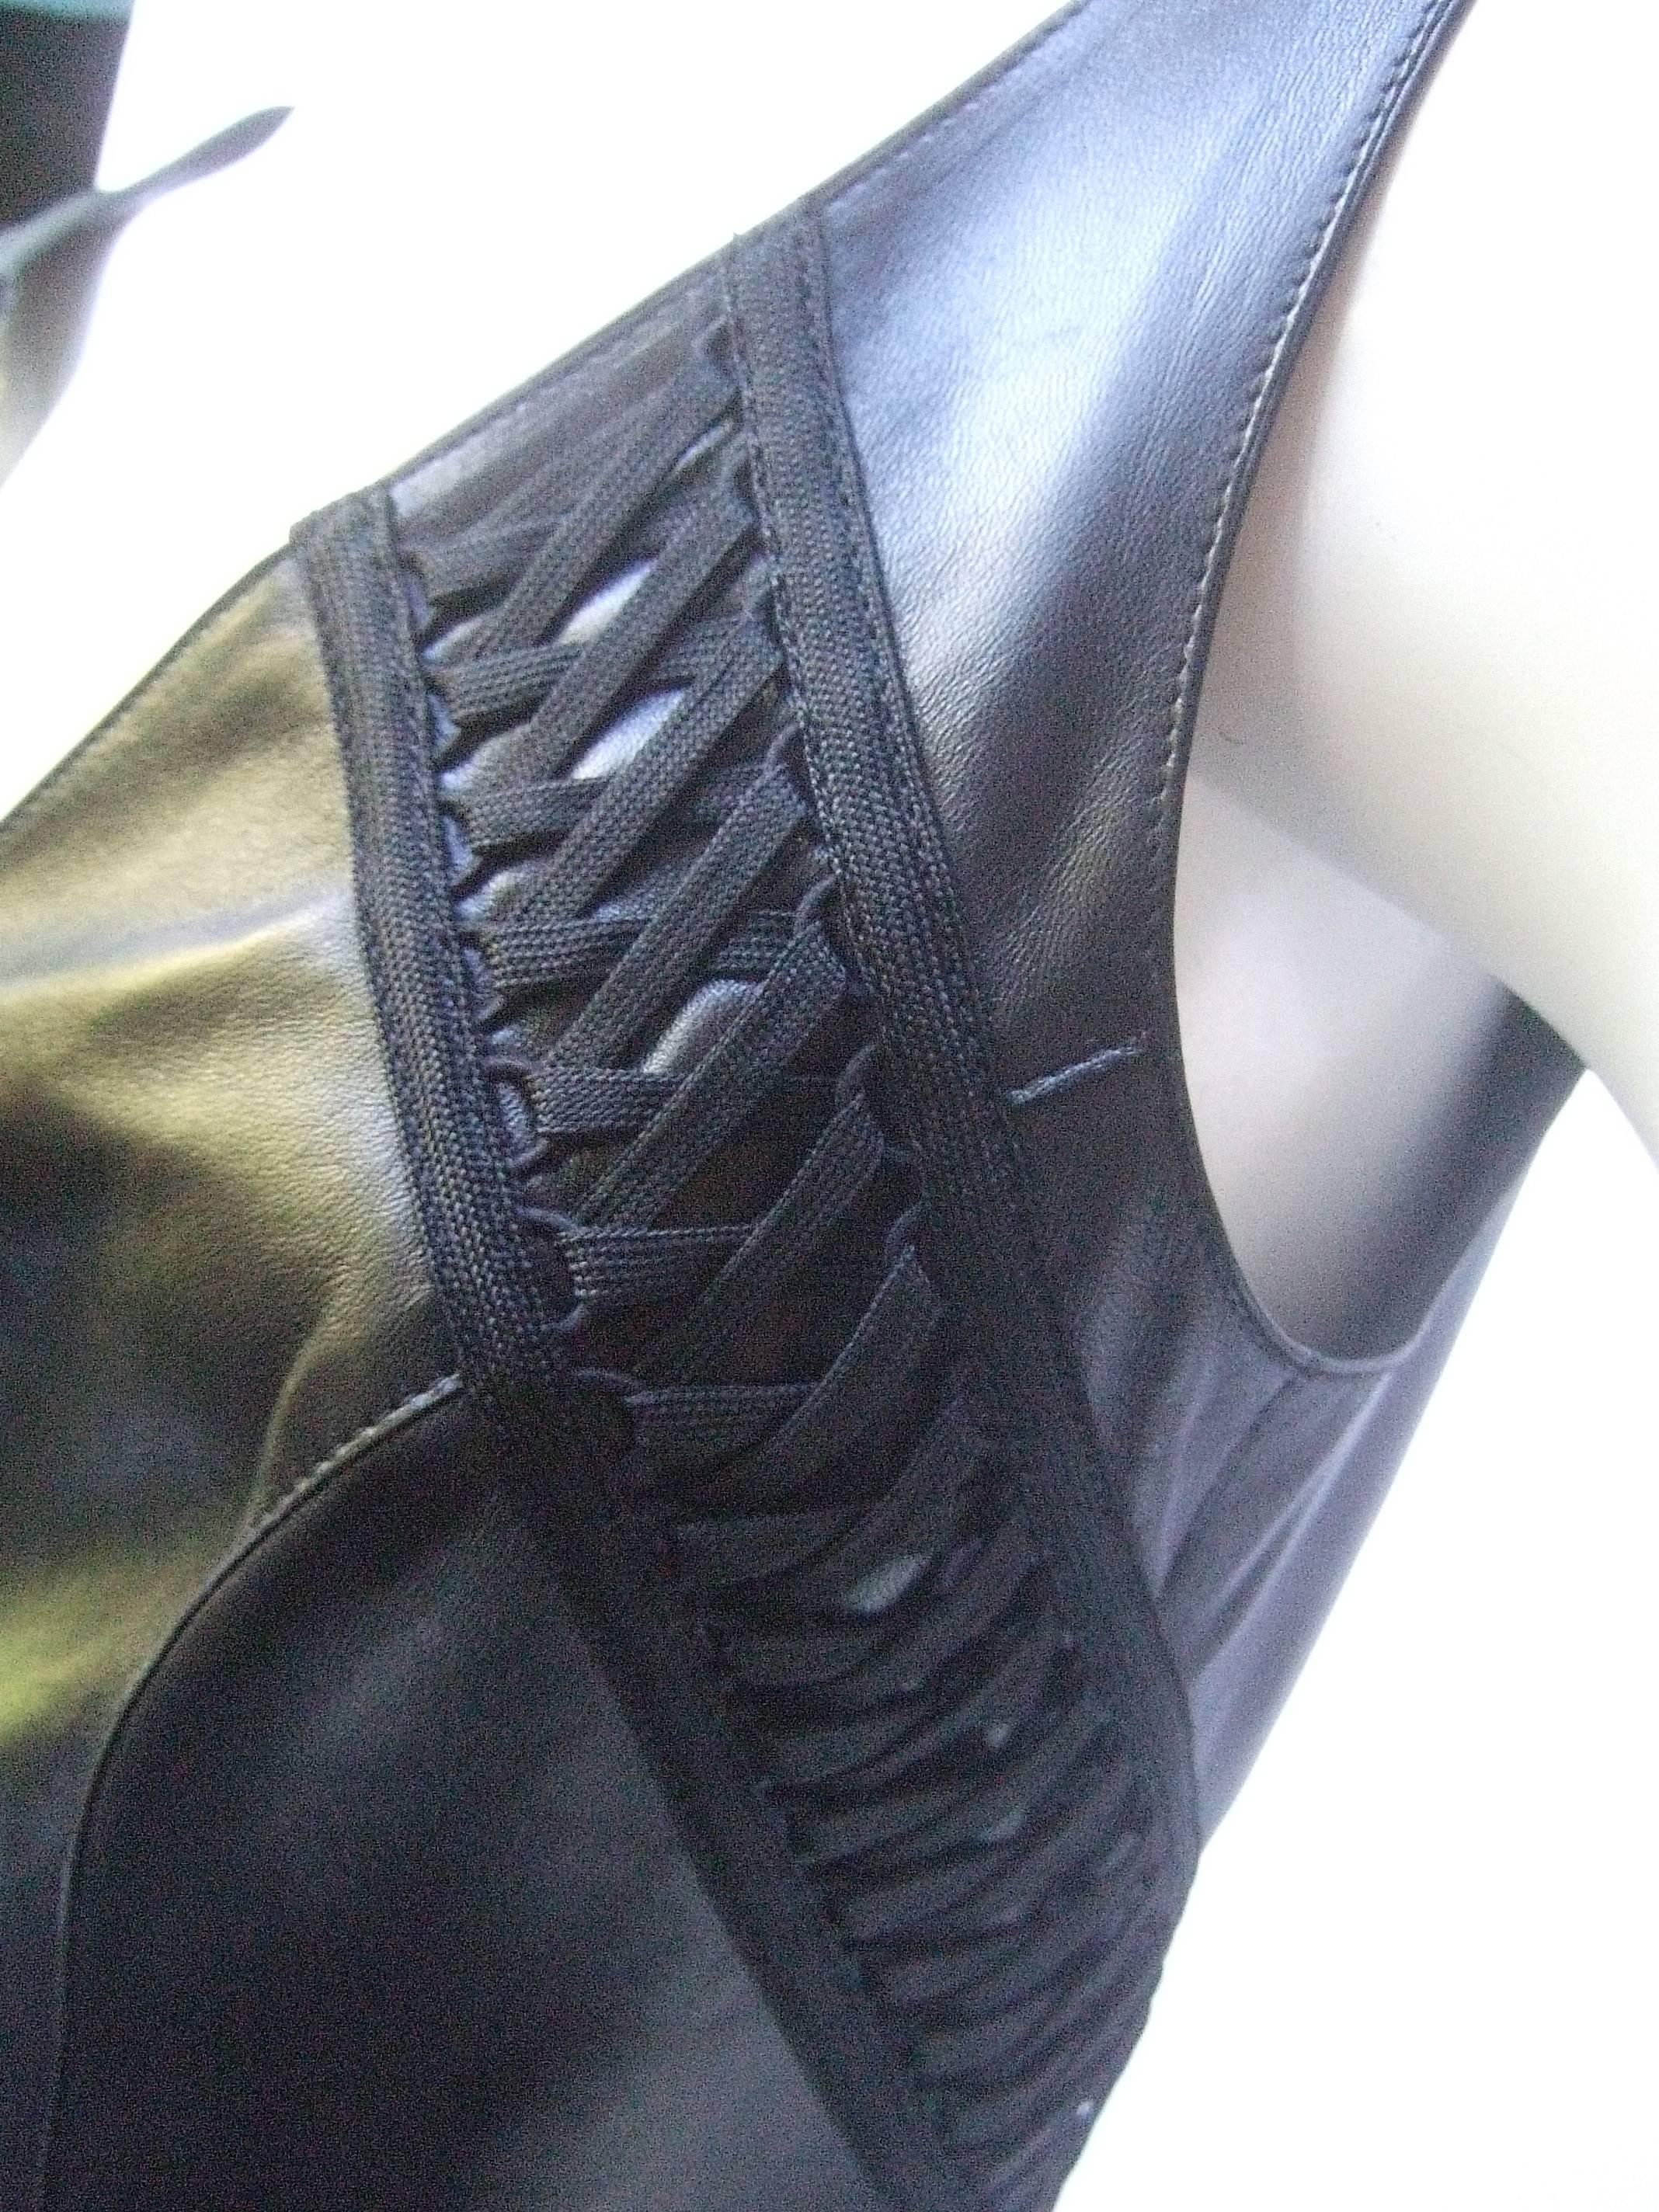 Women's Christian Dior Paris Chic Black Leather Bondage Dress 